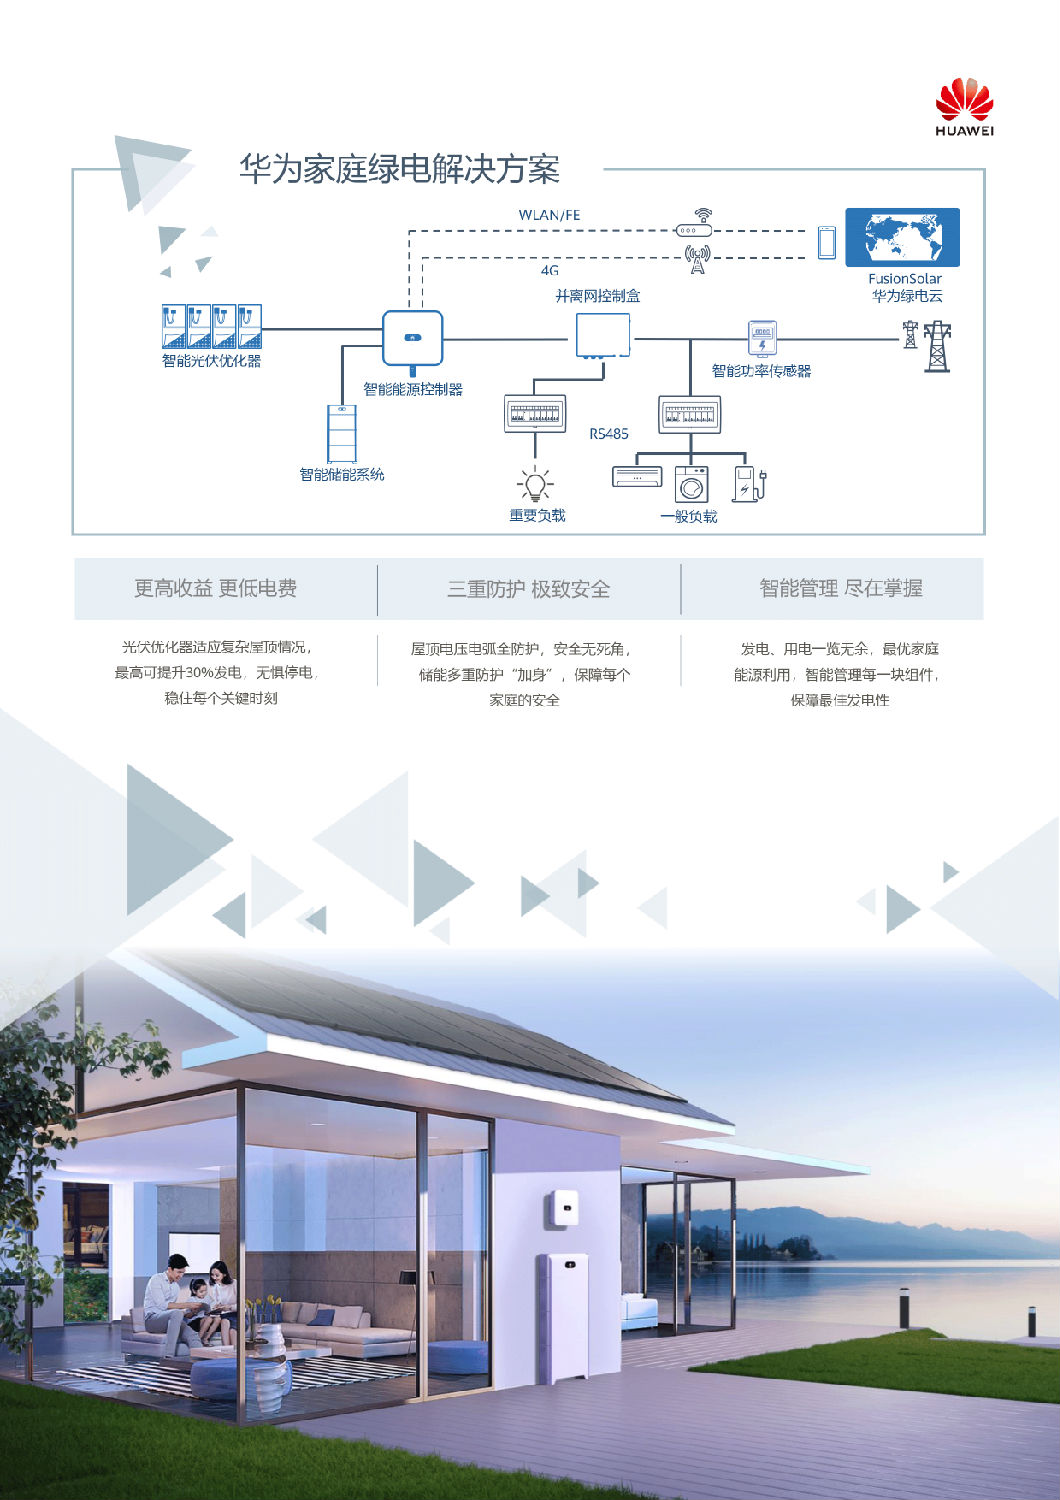 中国区家庭绿电解决方案宣传册-(20210316)-3.png